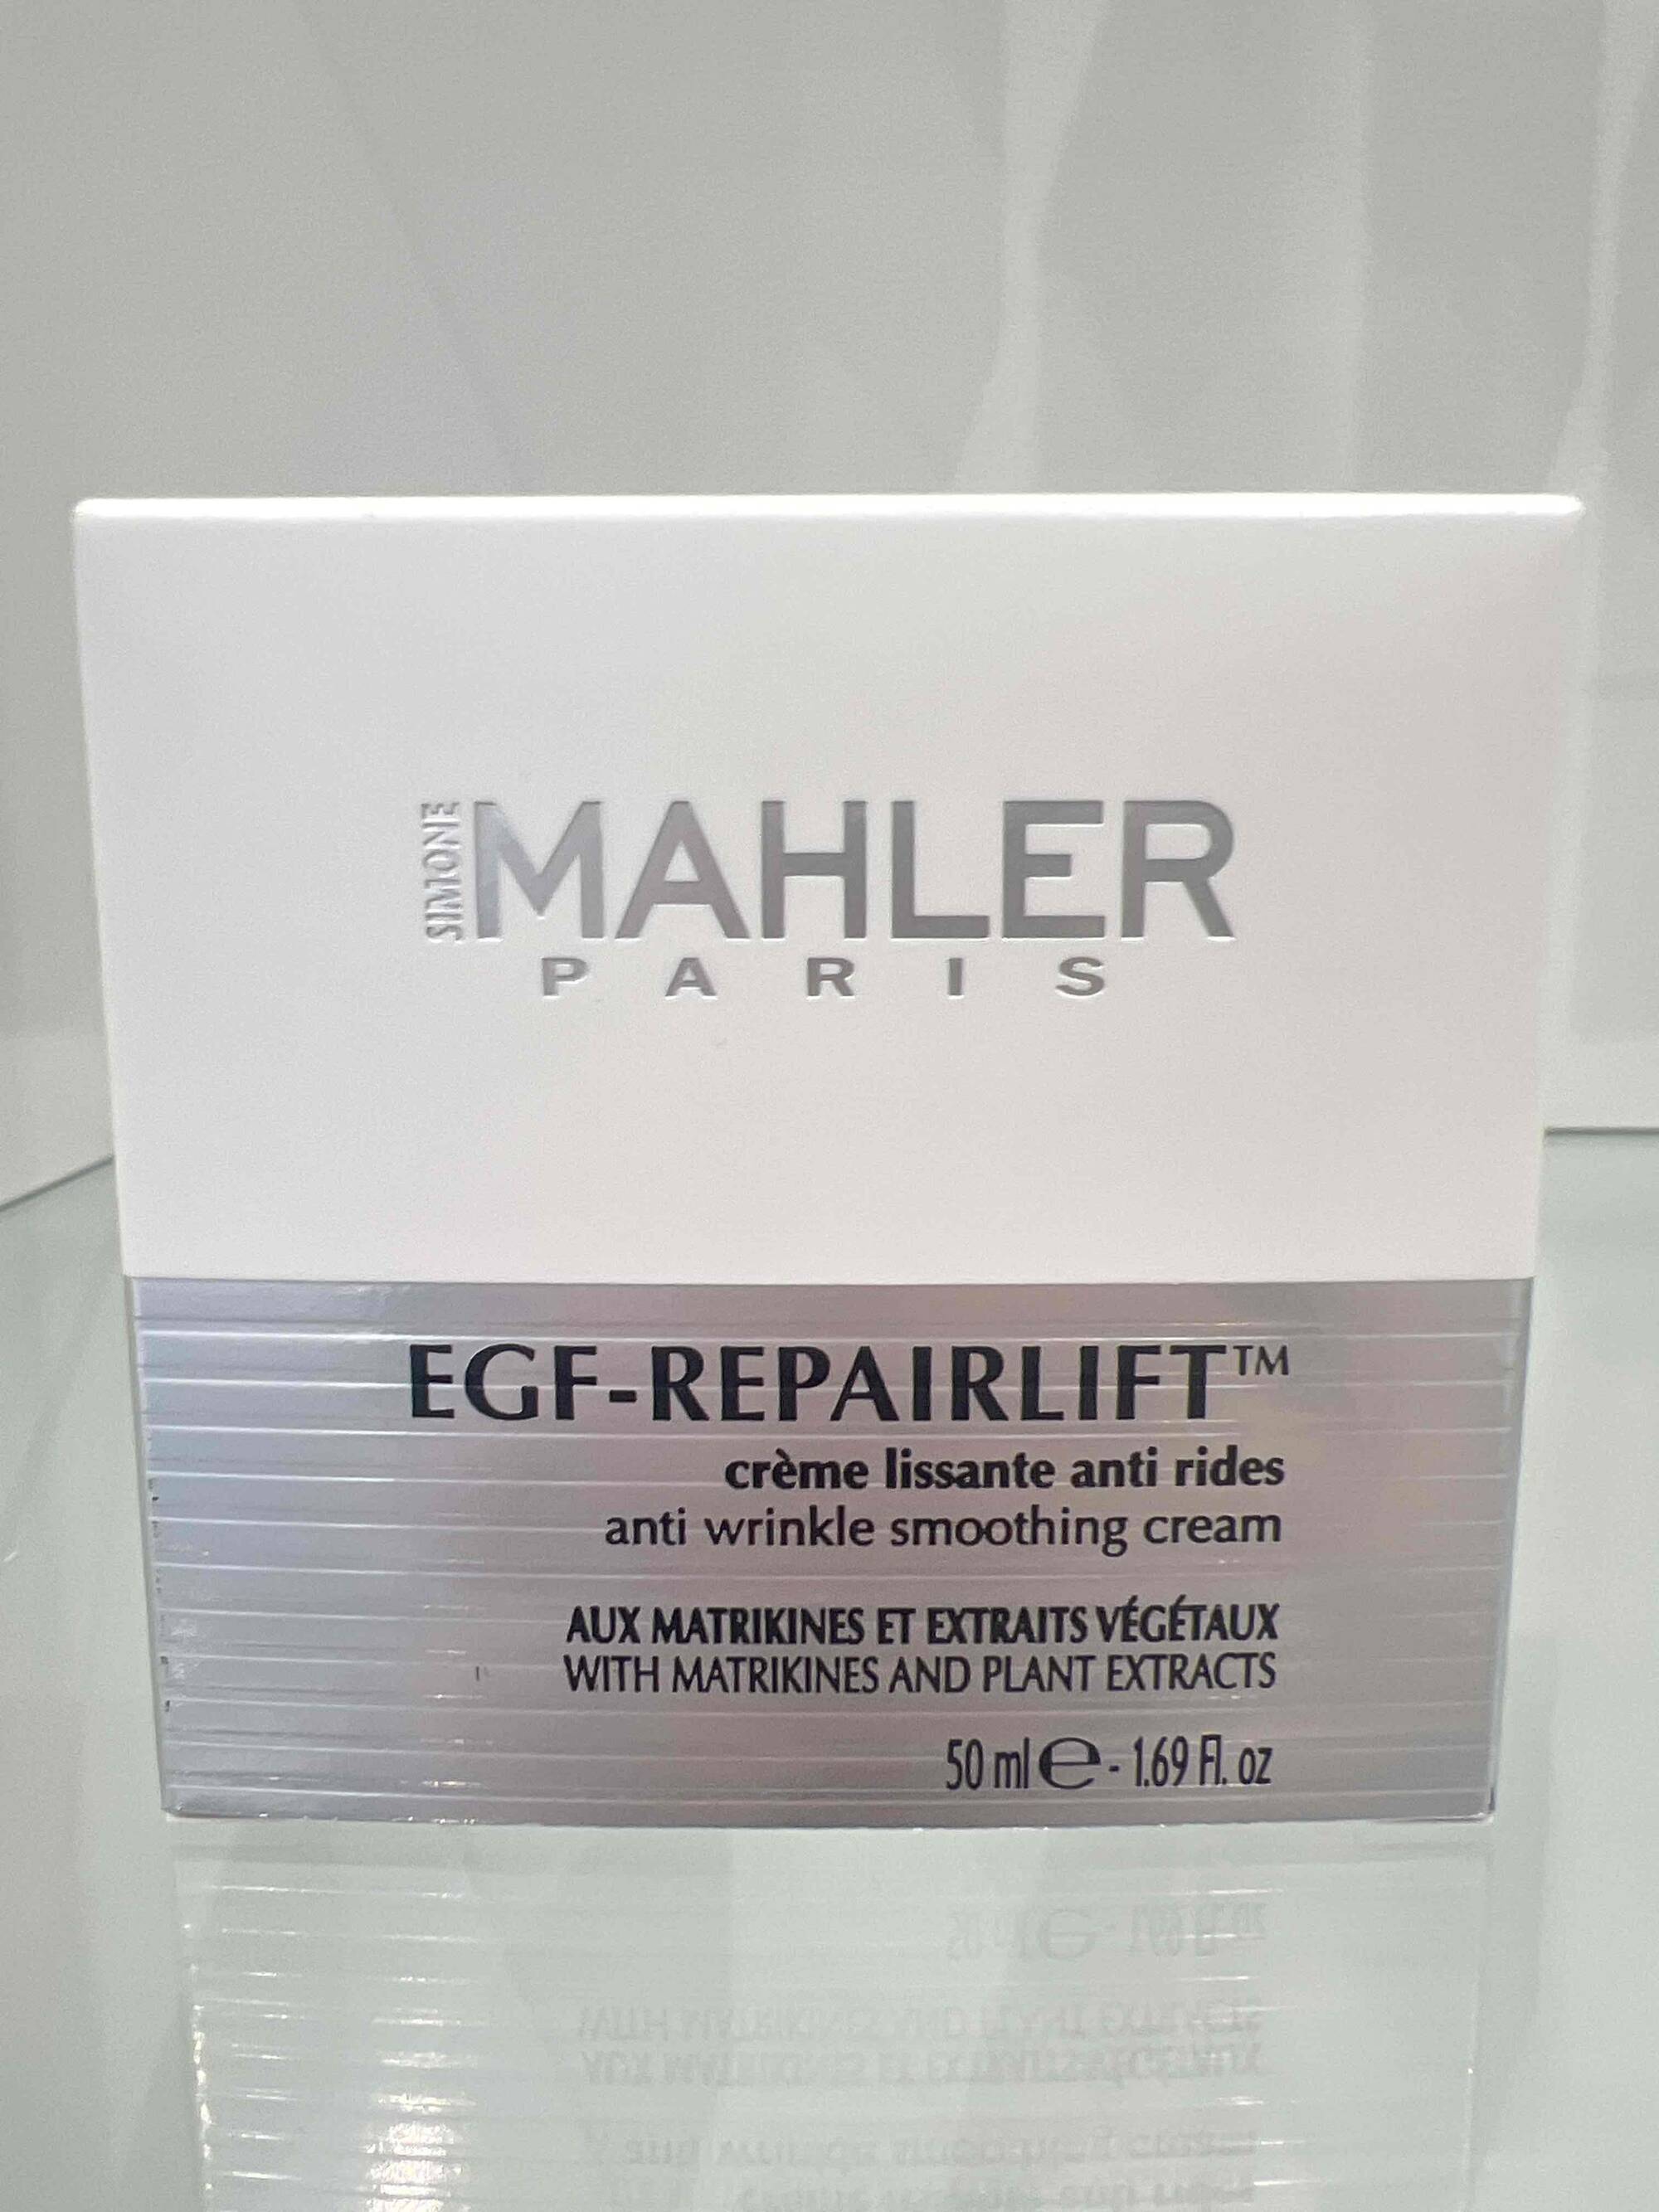 MAHLER - EGF Repairlift - Crème lissante anti rides